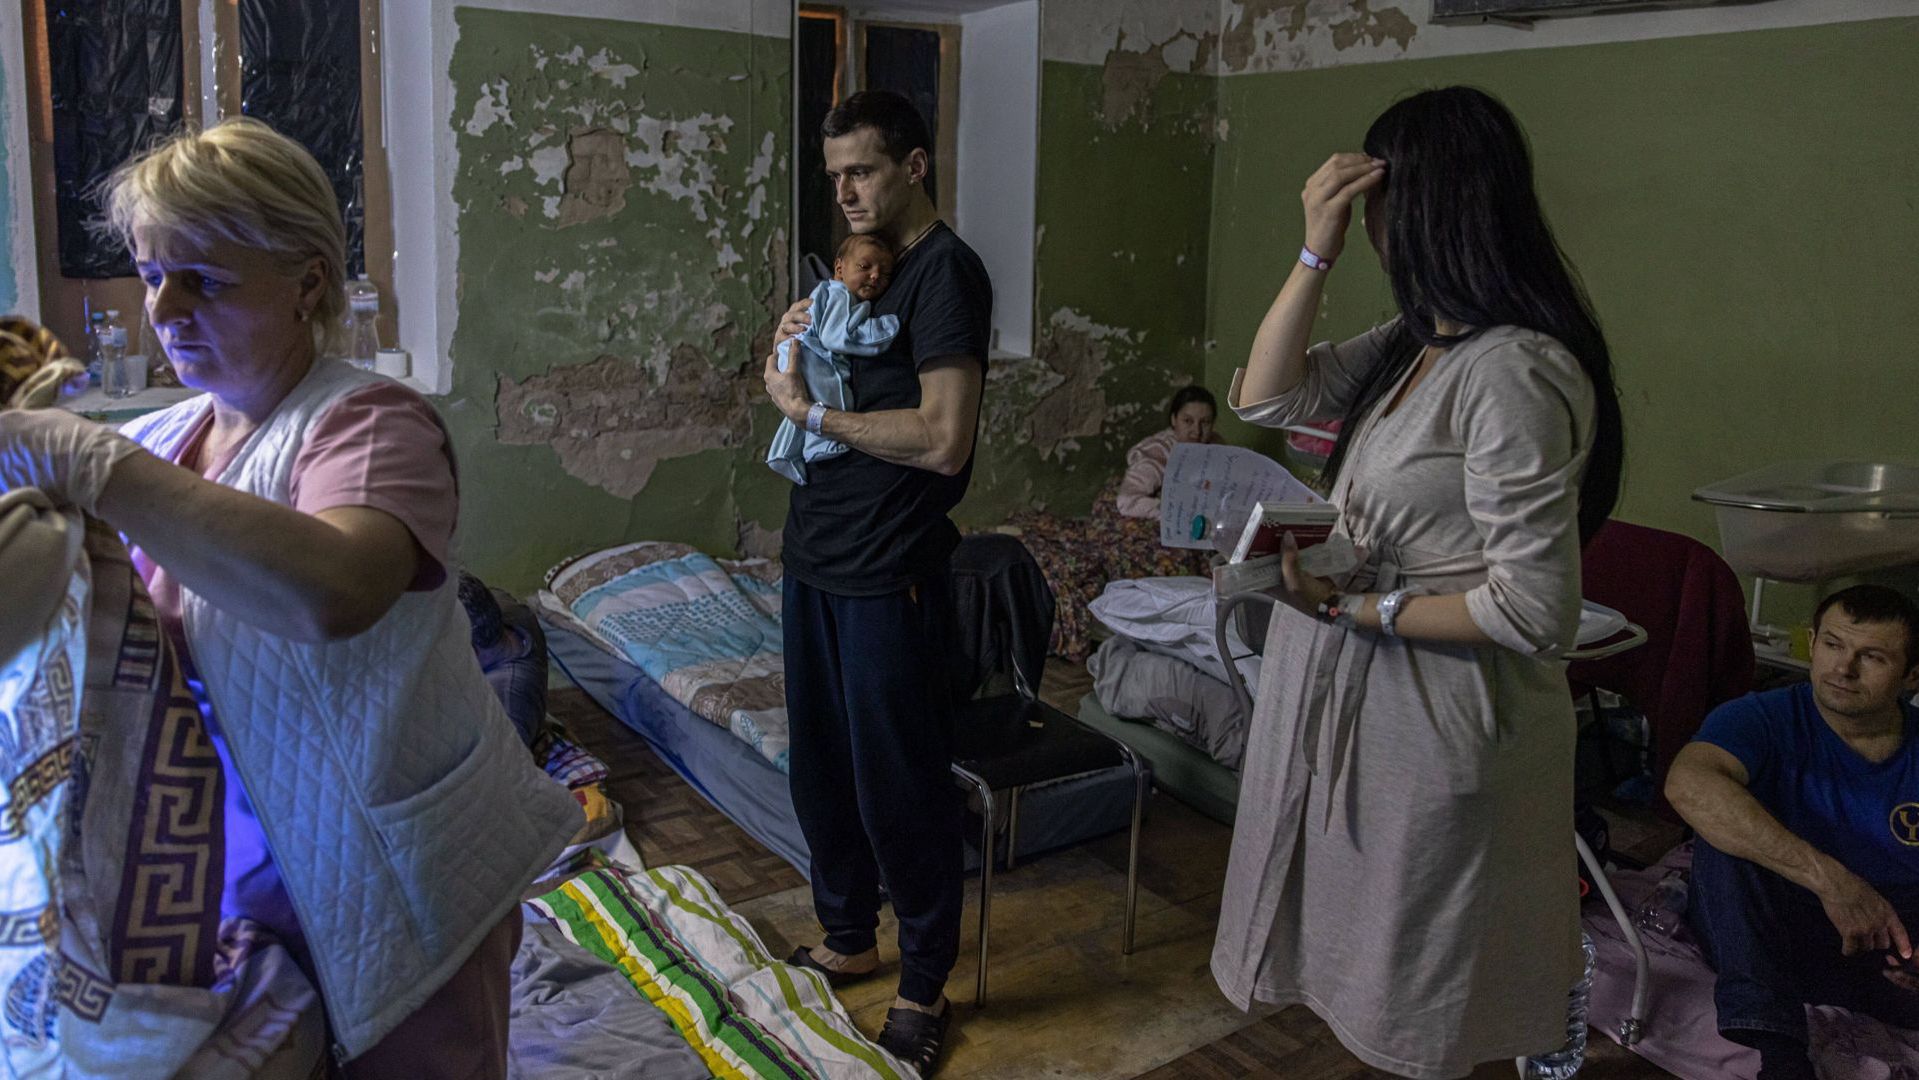 Kijów. Ojciec trzyma noworodka w piwnicy szpitala położniczego wykorzystywanego jako schron przeciwbombowy 